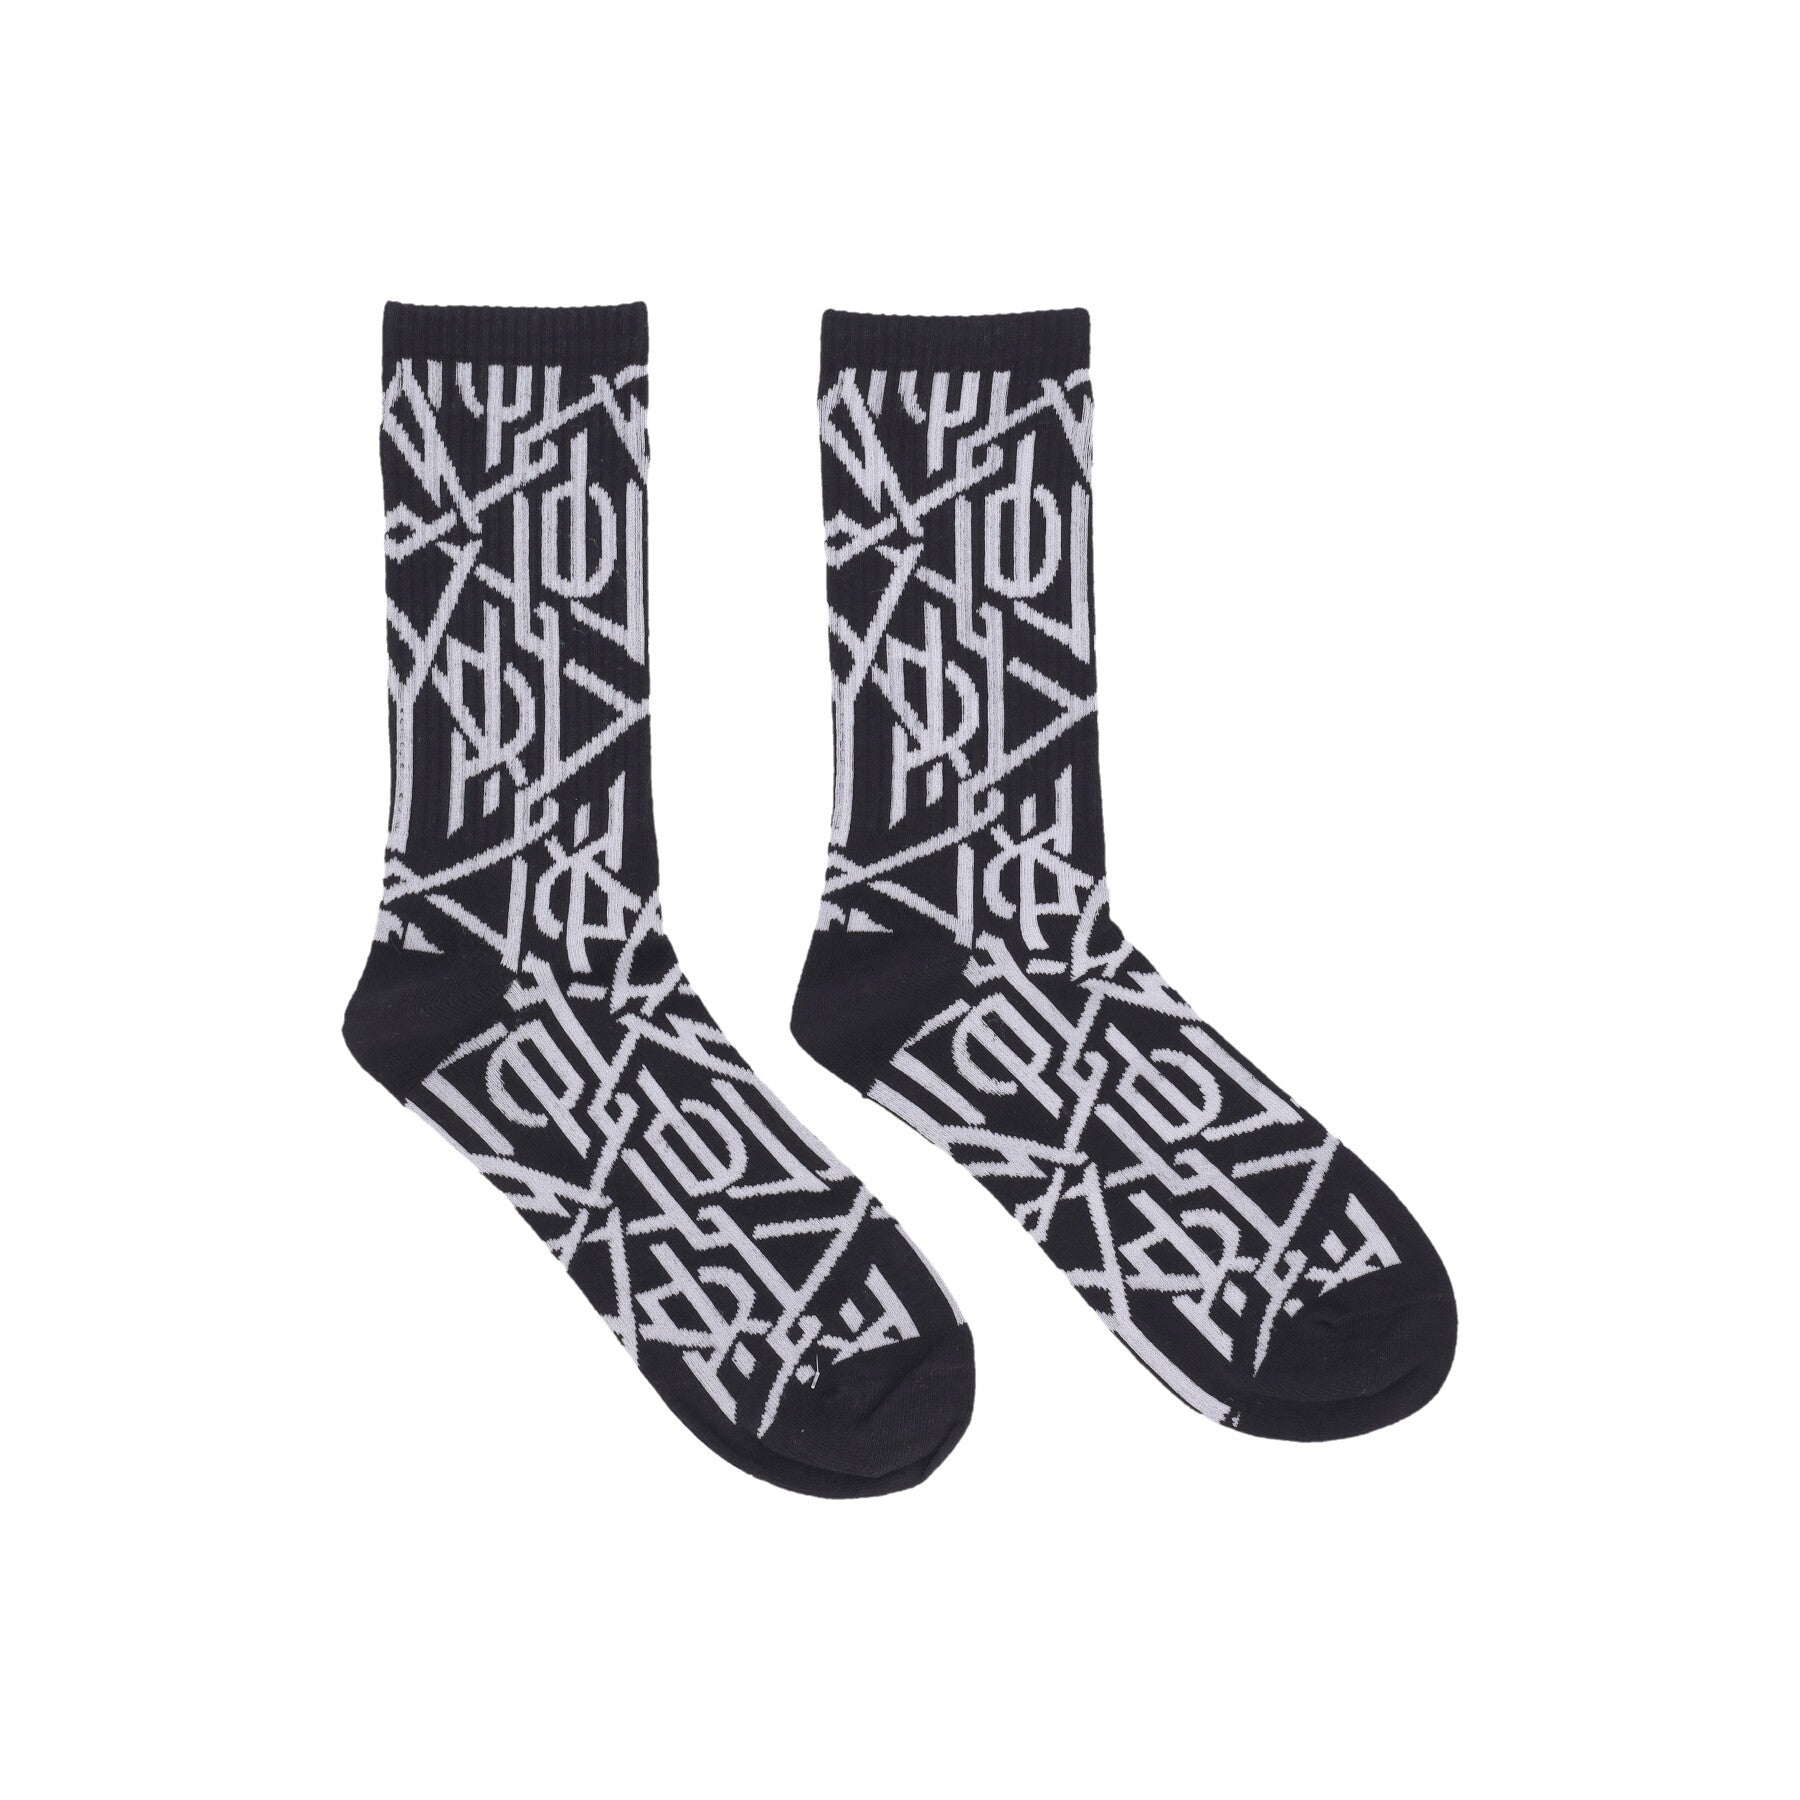 Dolly Noire, Calza Media Uomo Monogram Socks, Black